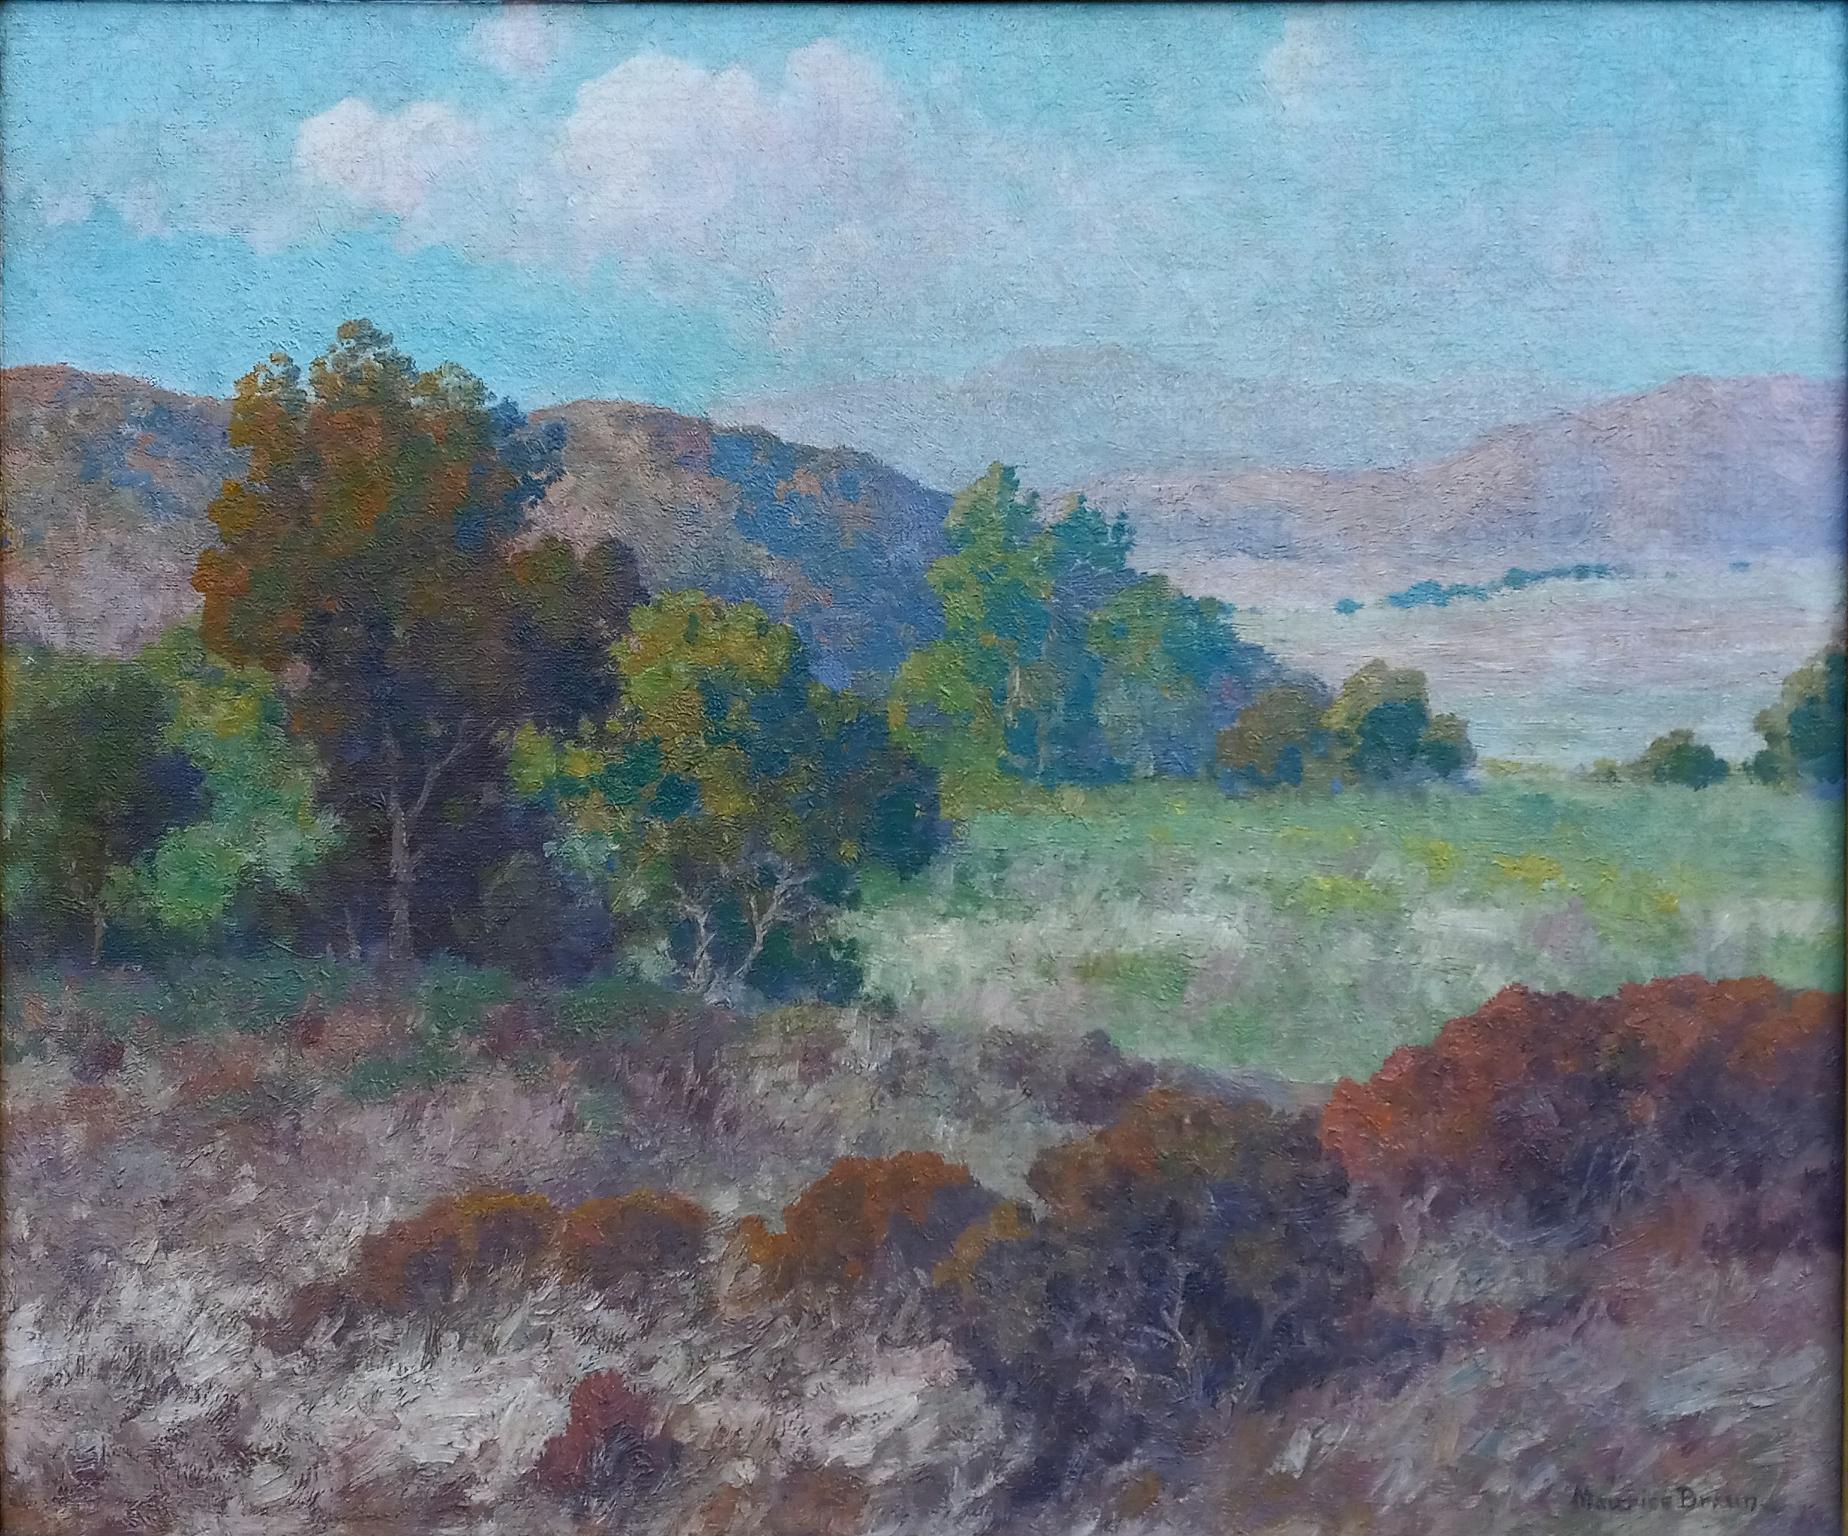 

Schönes Öl auf Leinwand des bekannten Künstlers Maurice Braun (1877-1941) aus San Diego.
Das Gemälde misst 20 